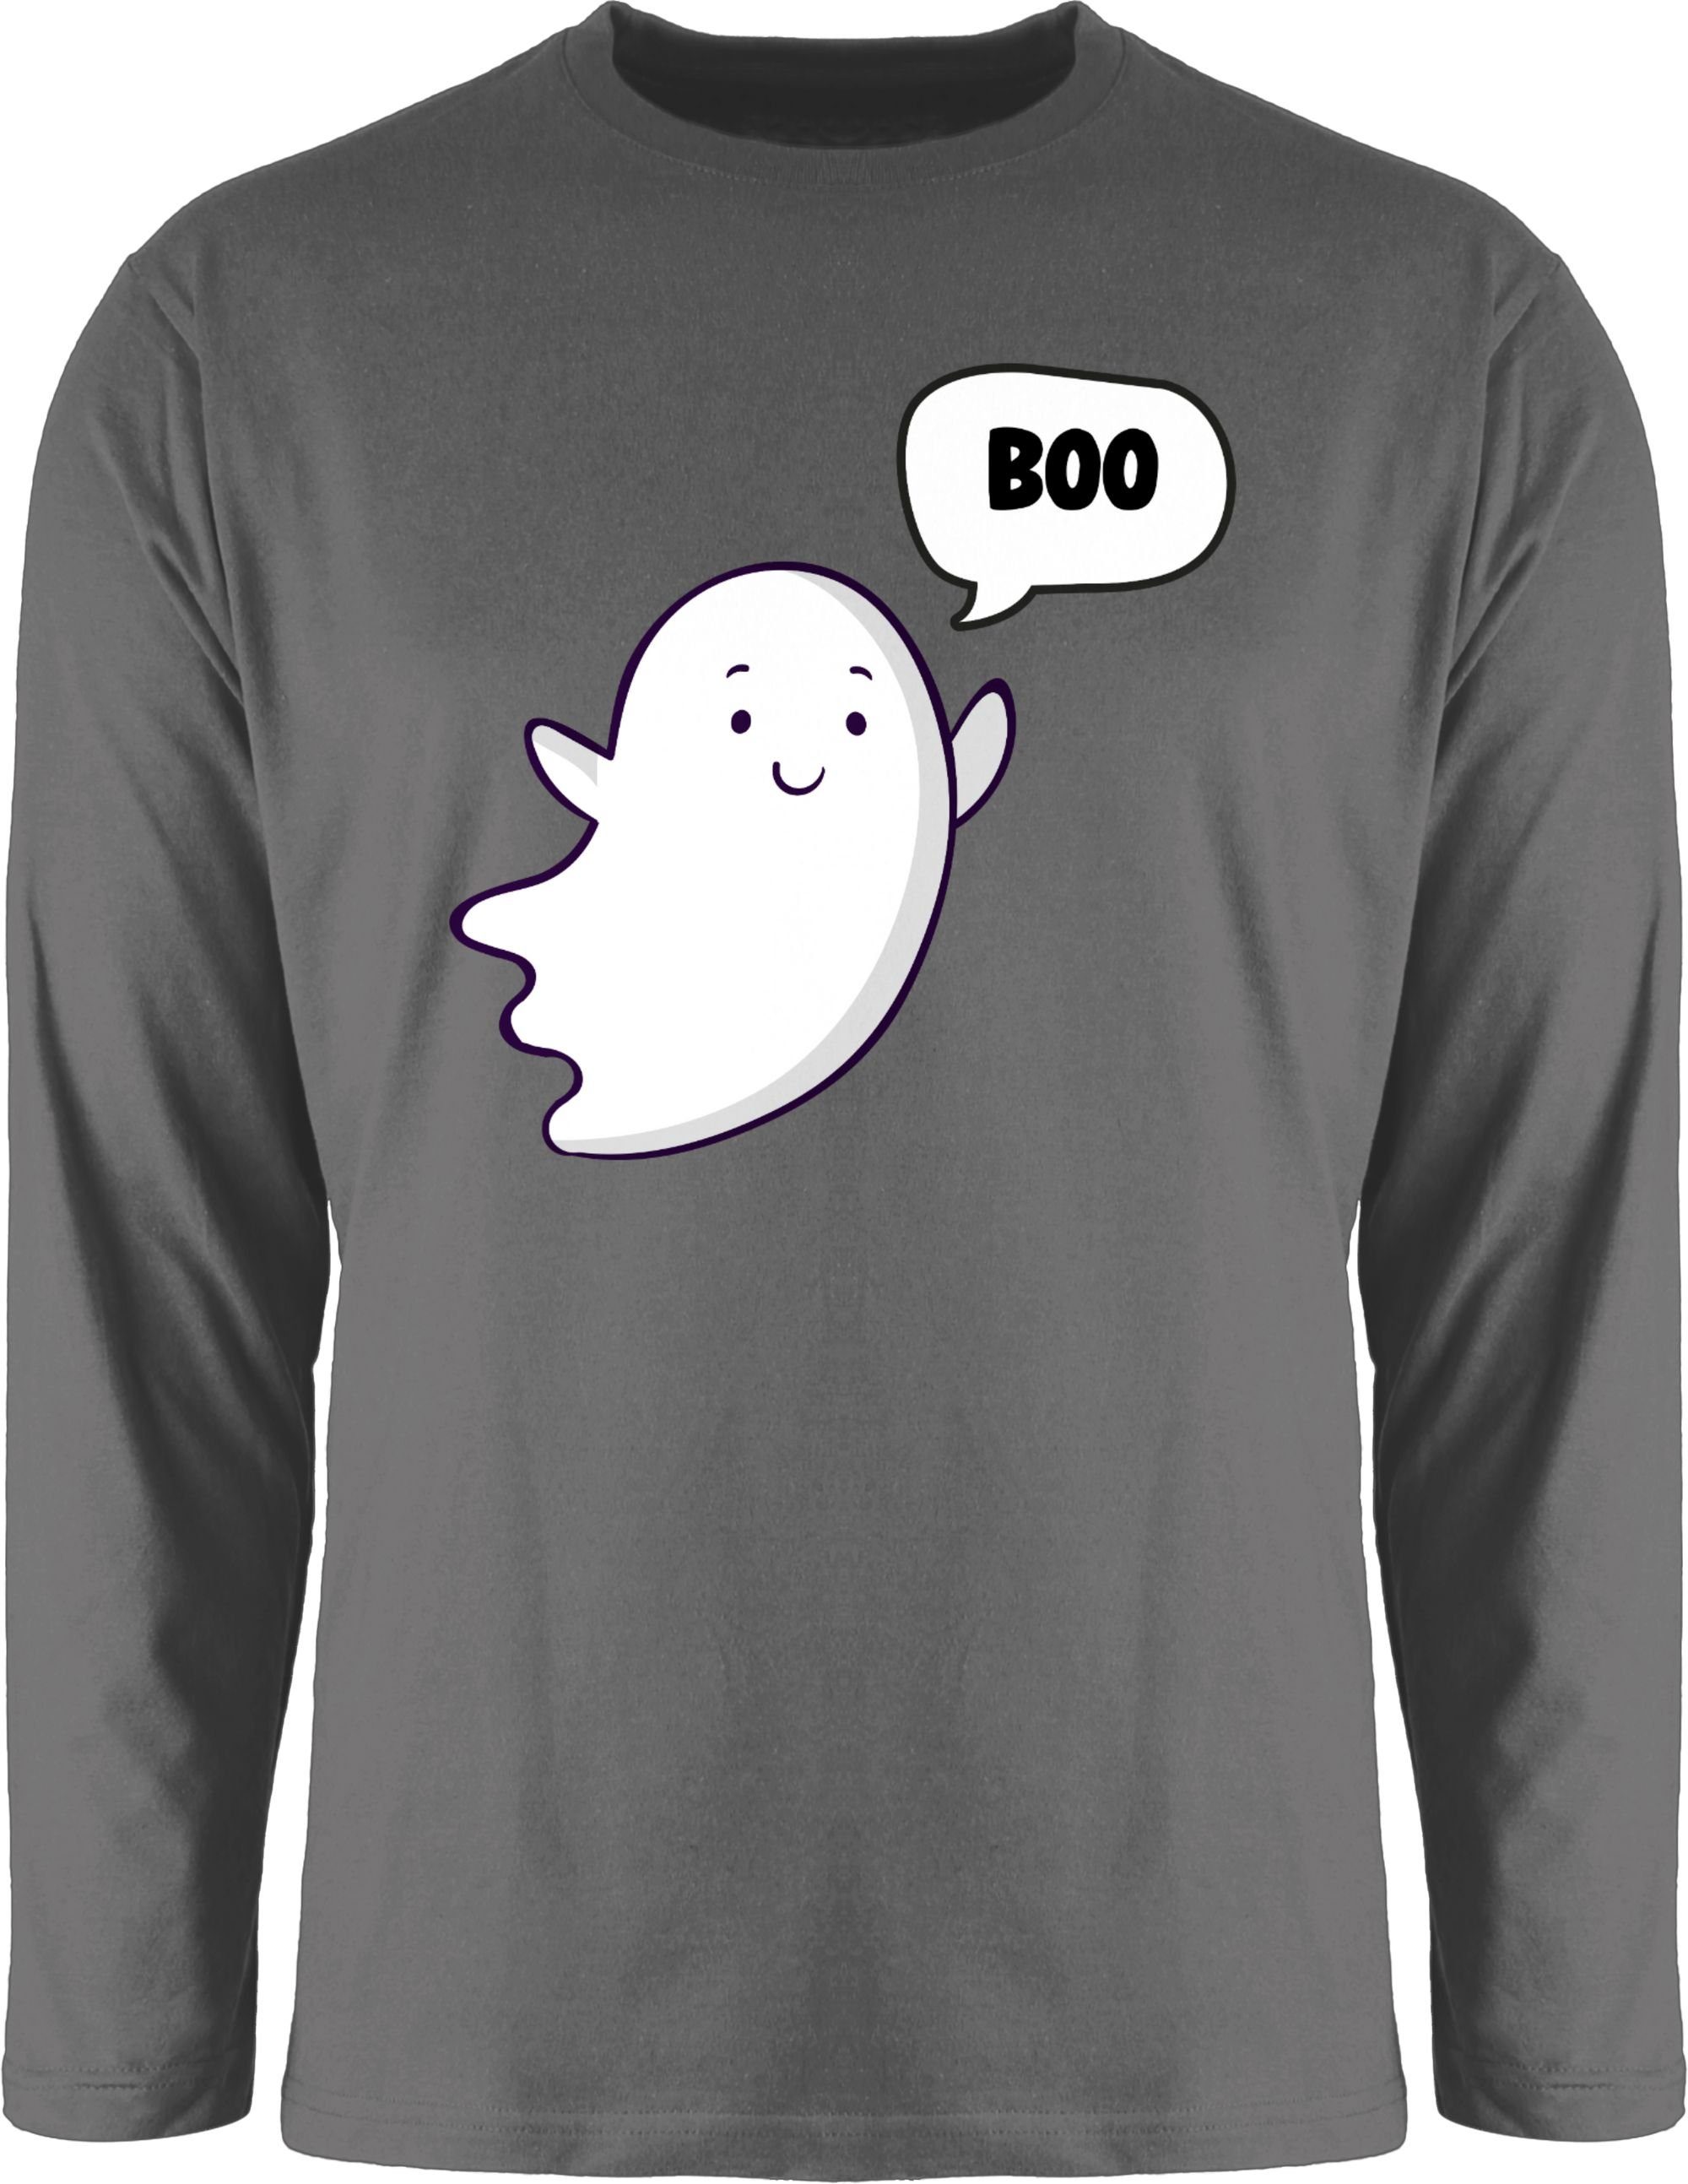 Süßer Herren Dunkelgrau Geister Ghost 3 Kostüme Rundhalsshirt Shirtracer kleiner Geist Gespenst Halloween